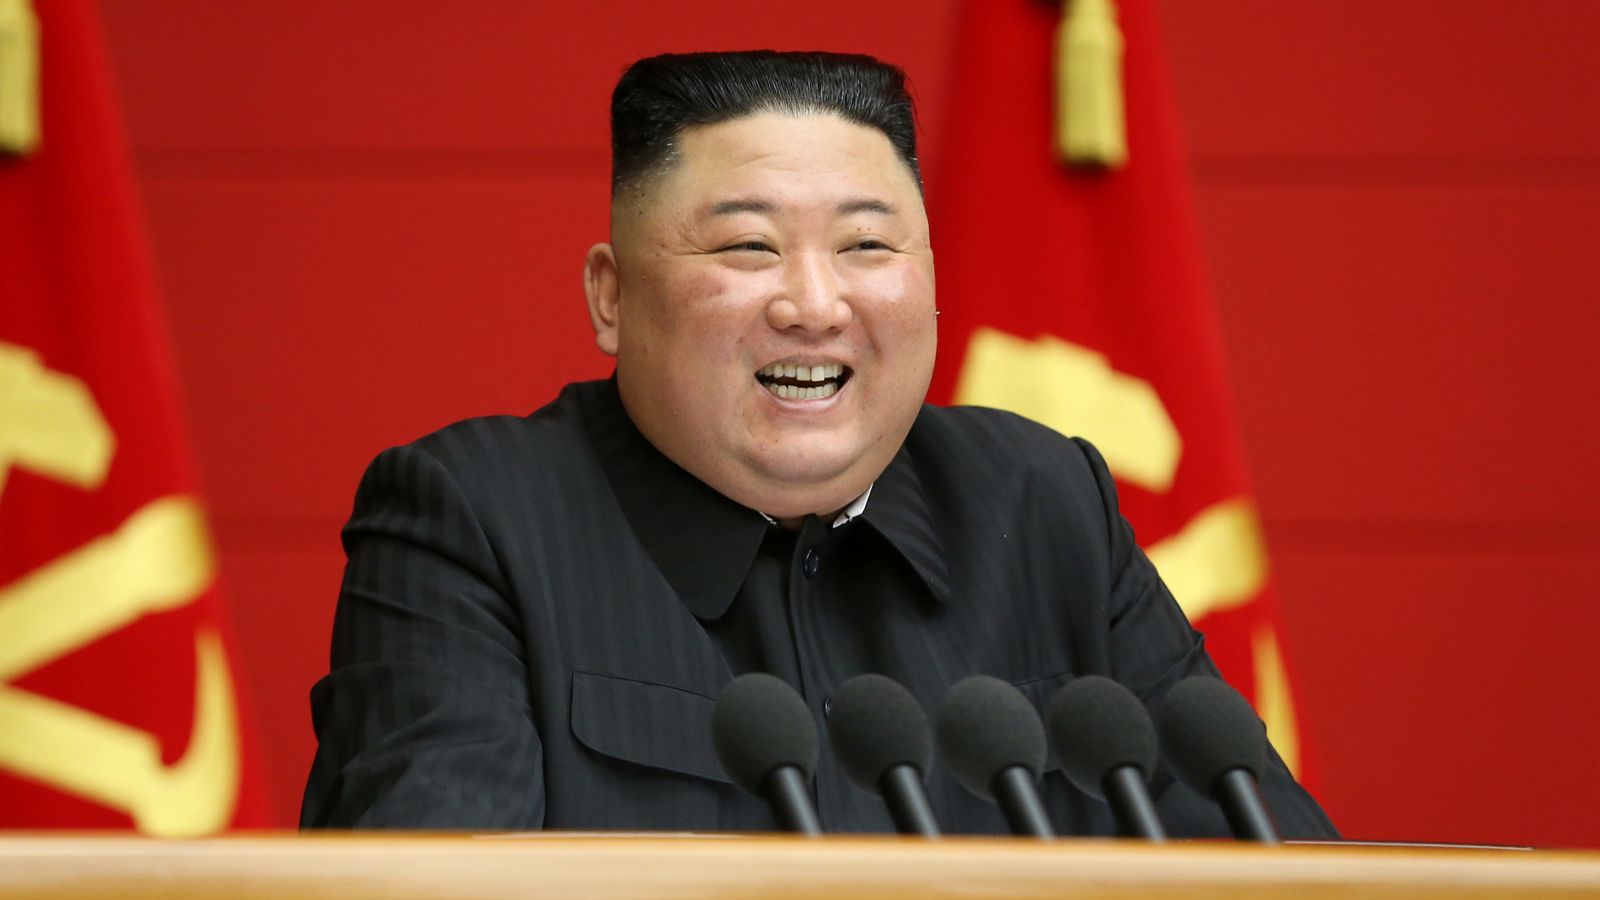 South Korea uses AI to 'weigh' North Korean leader Kim Jong Un | World News